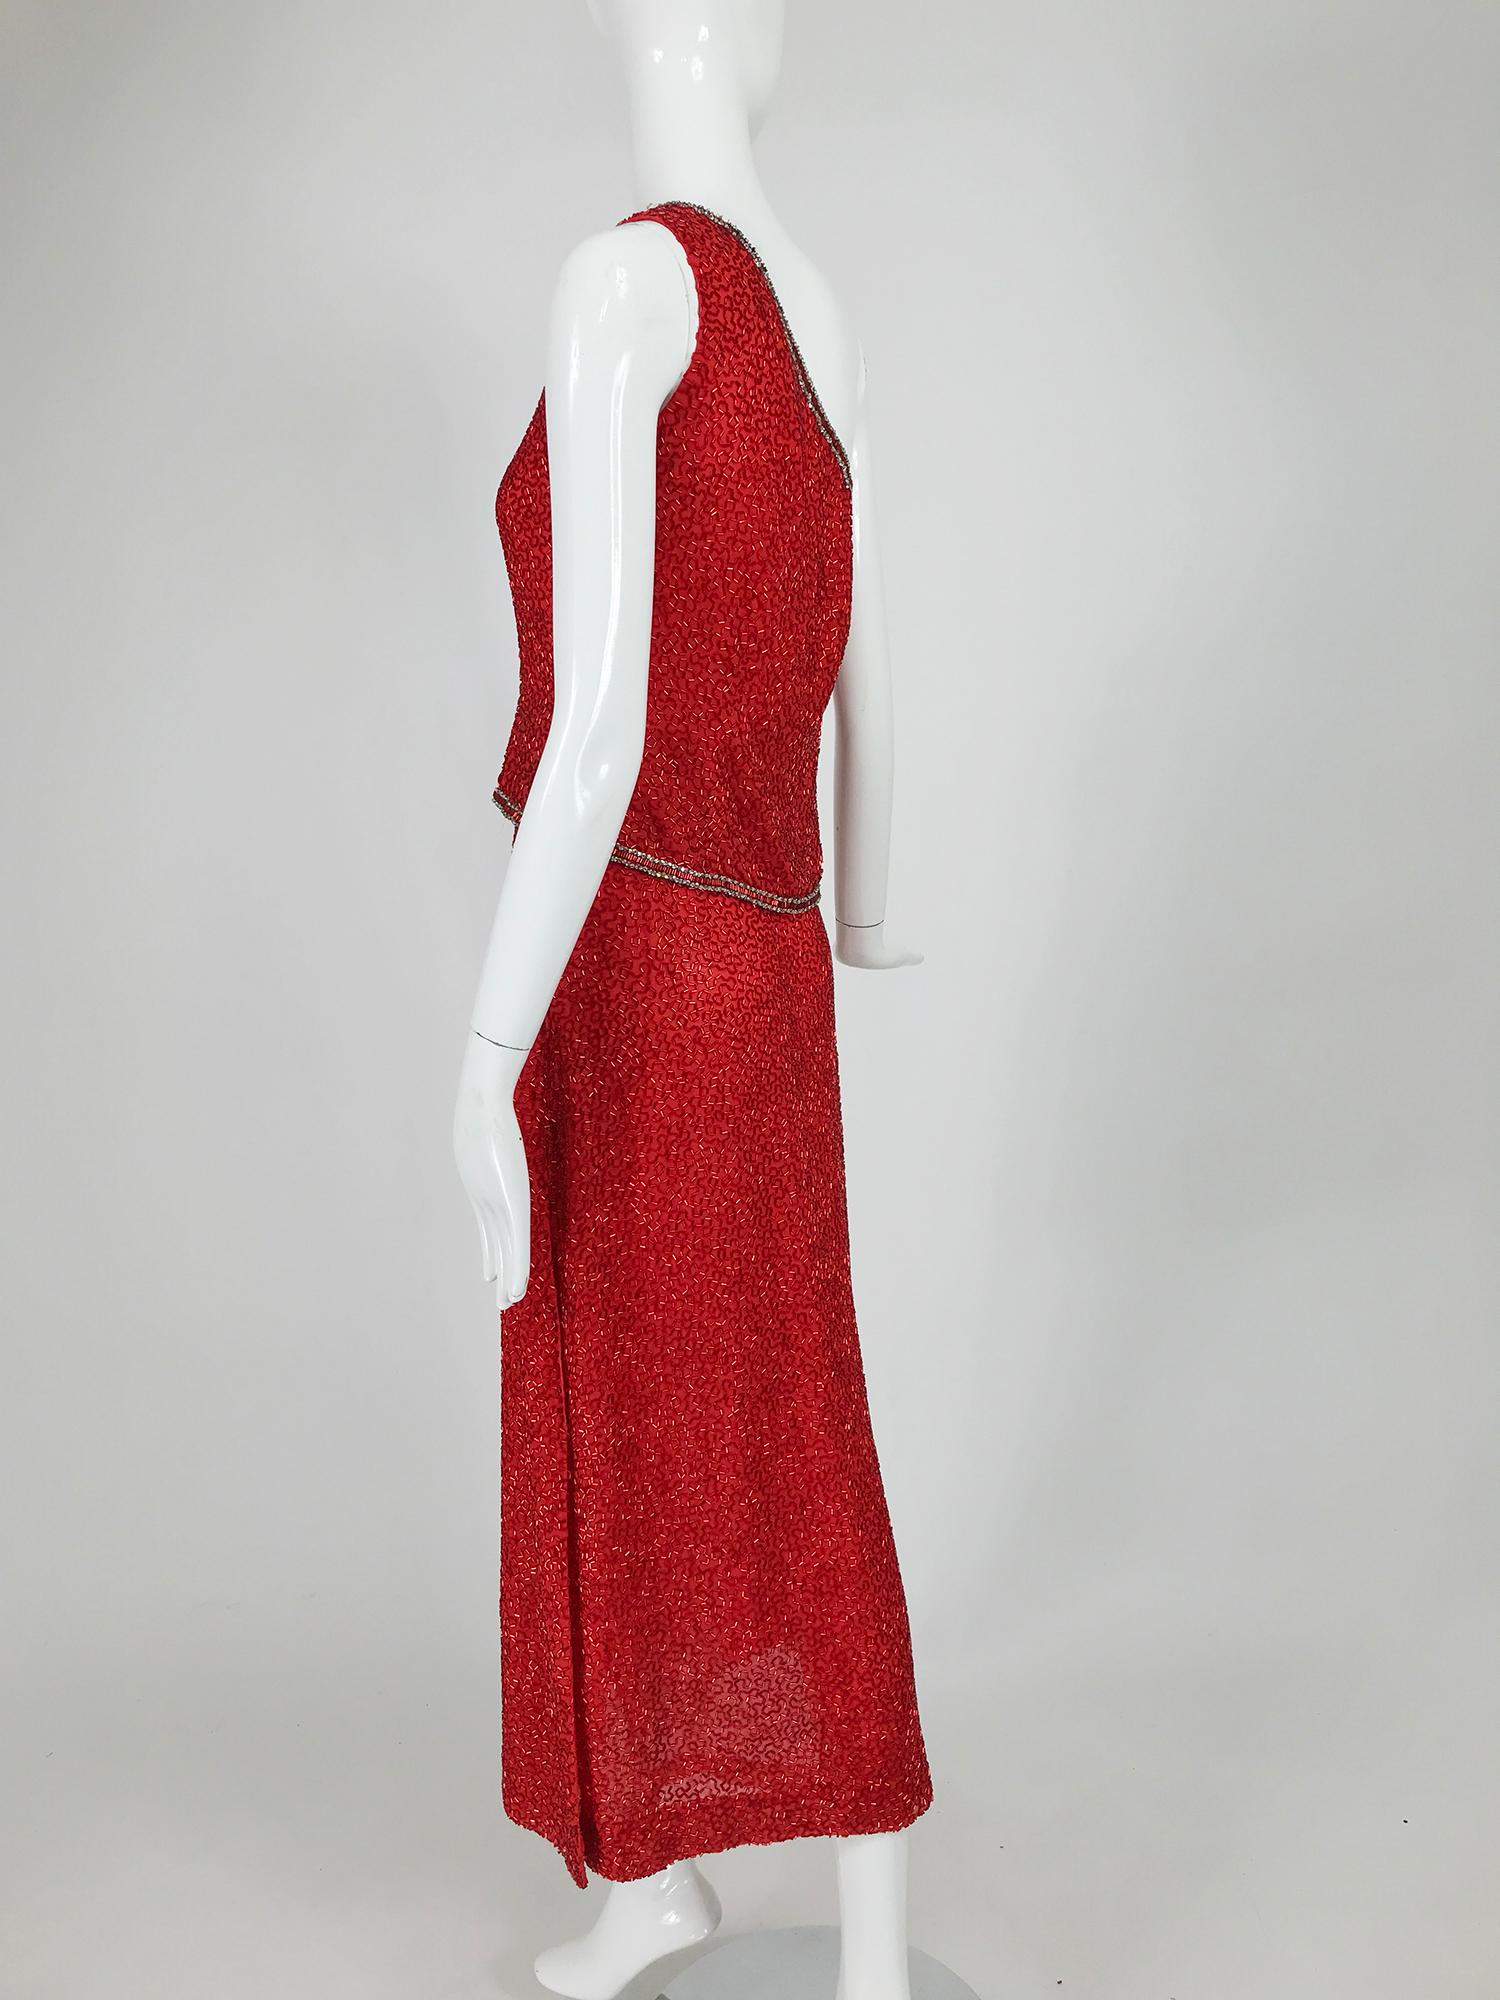 Victoria Royal Fire Engine Rotes, perlenbesetztes zweiteiliges One Shoulder-Kleid 1960er Damen